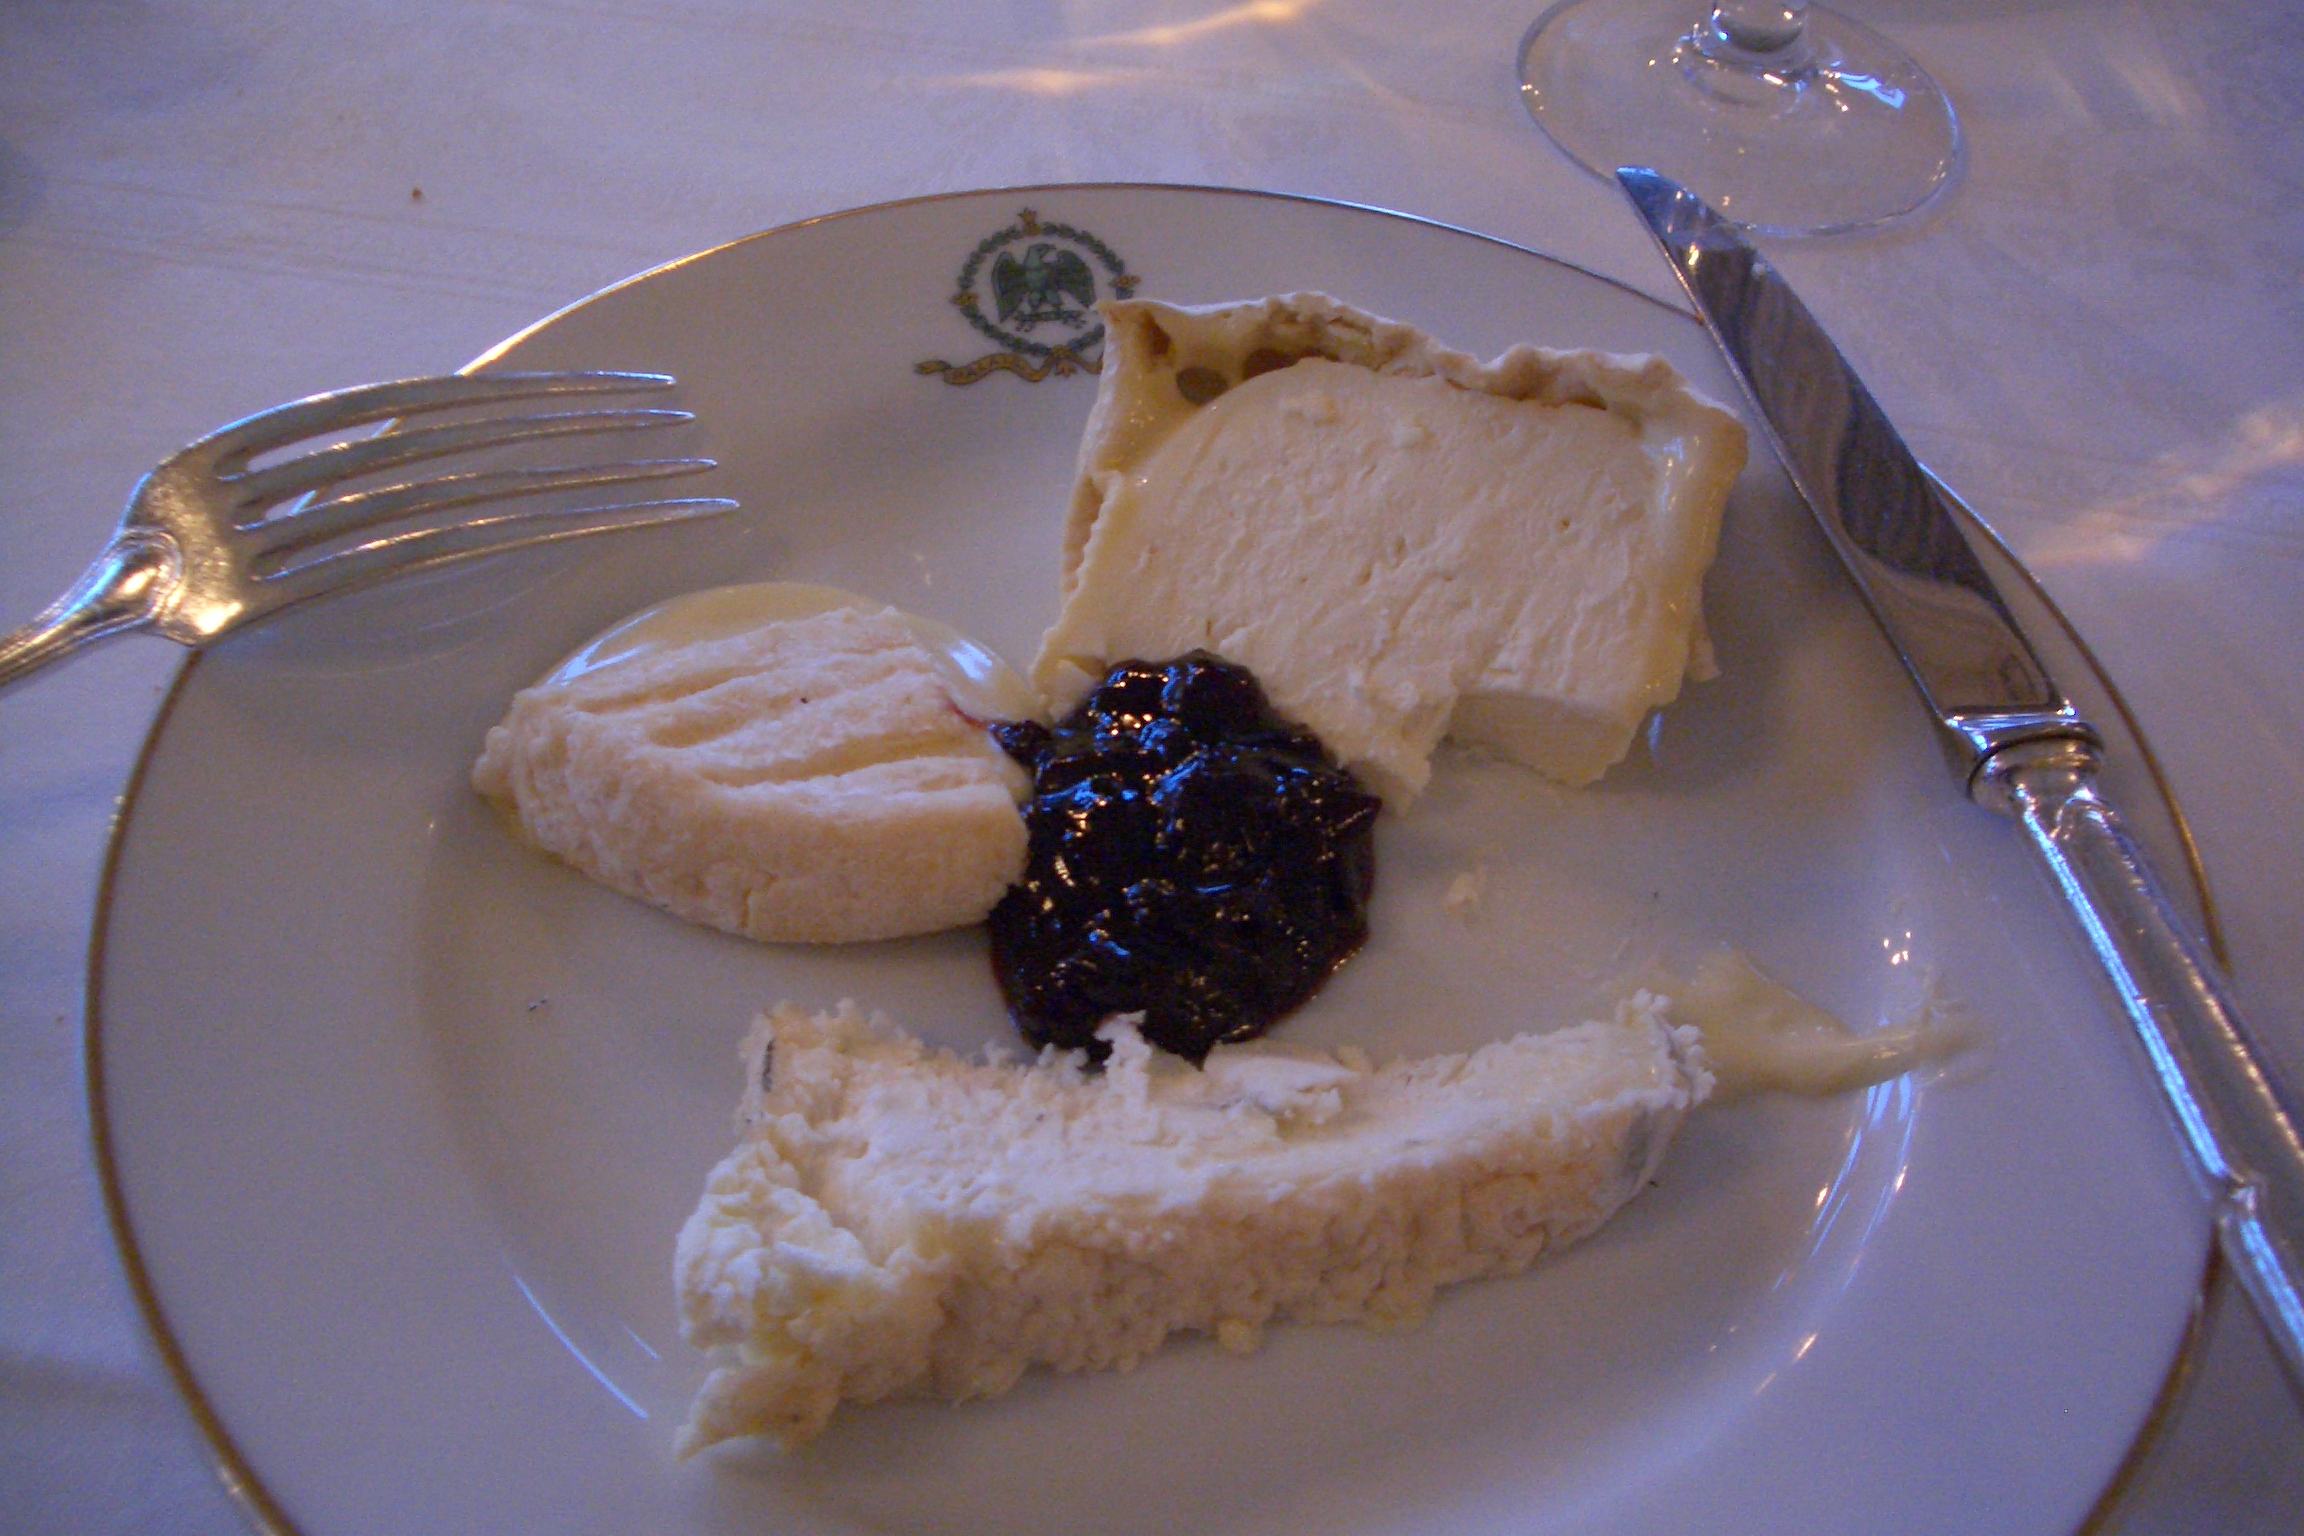 Palais cheese